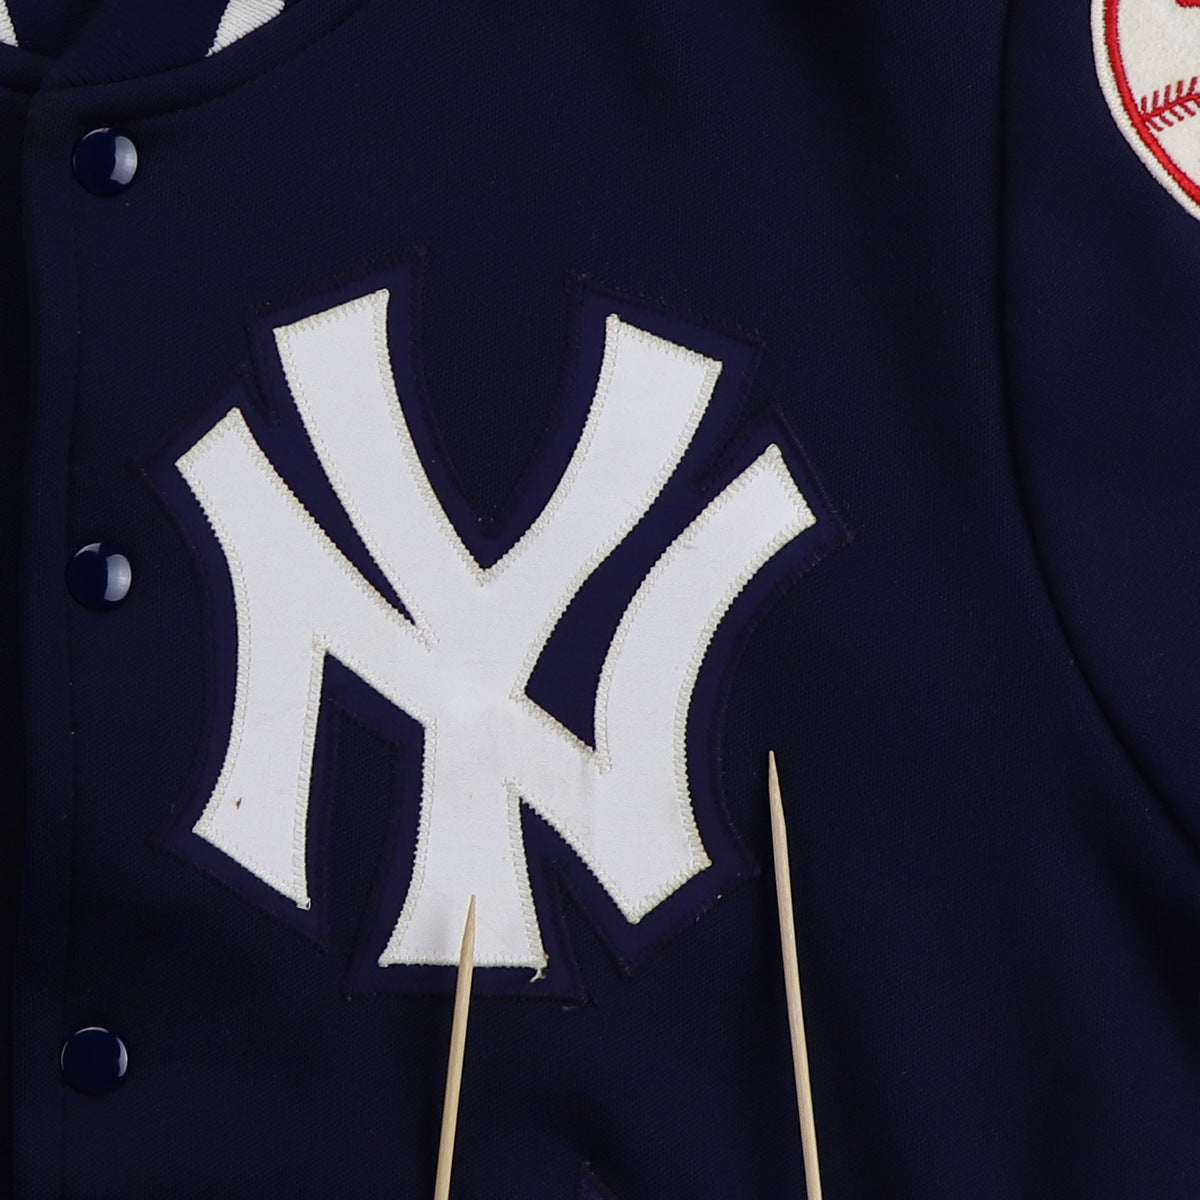 1970s New York Yankees Jacket – WyCo Vintage